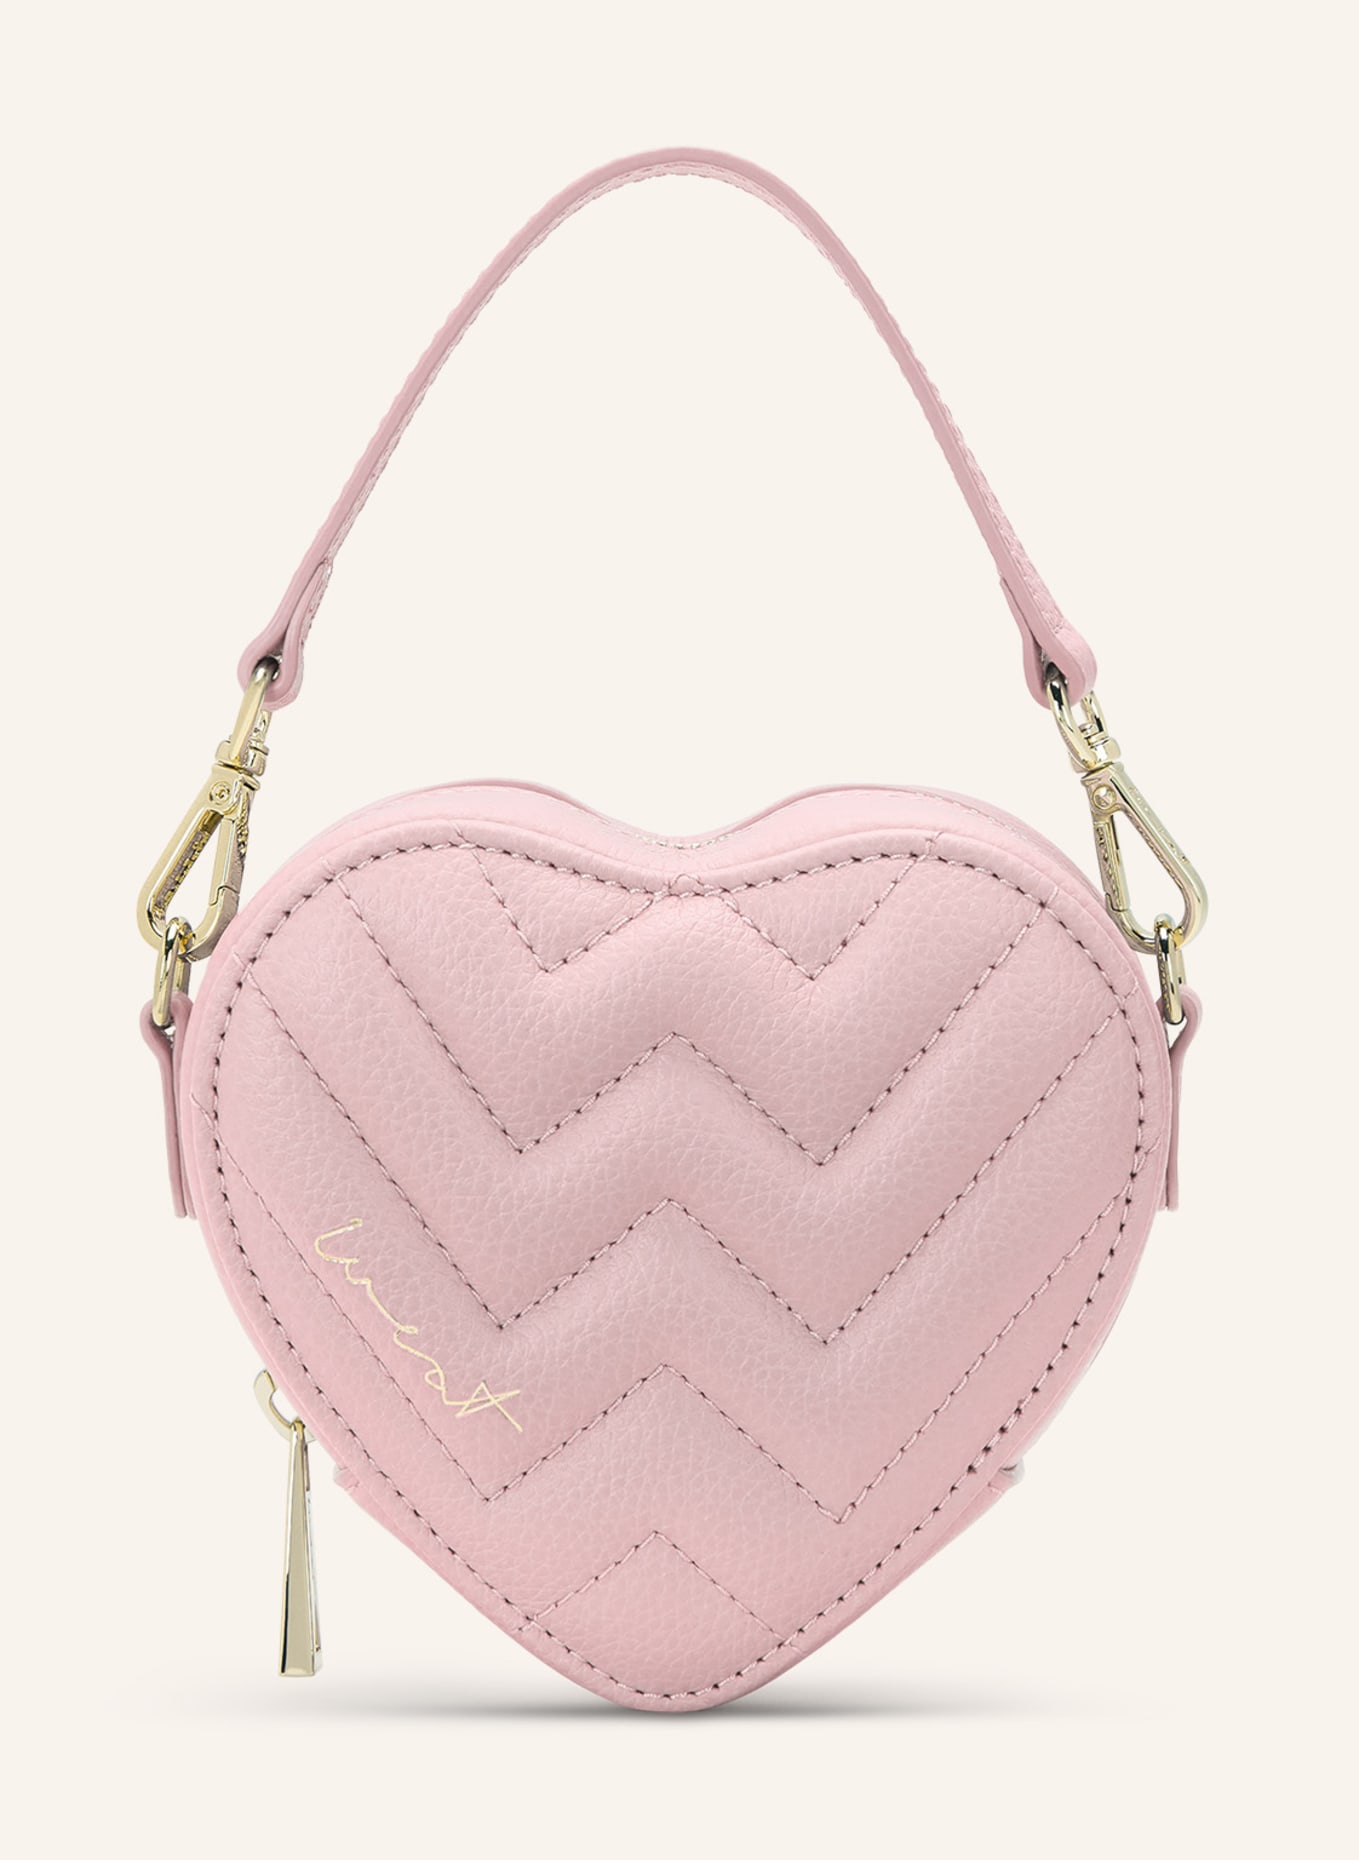 WEAT Handtasche MINI HEART, Farbe: ROSA (Bild 1)